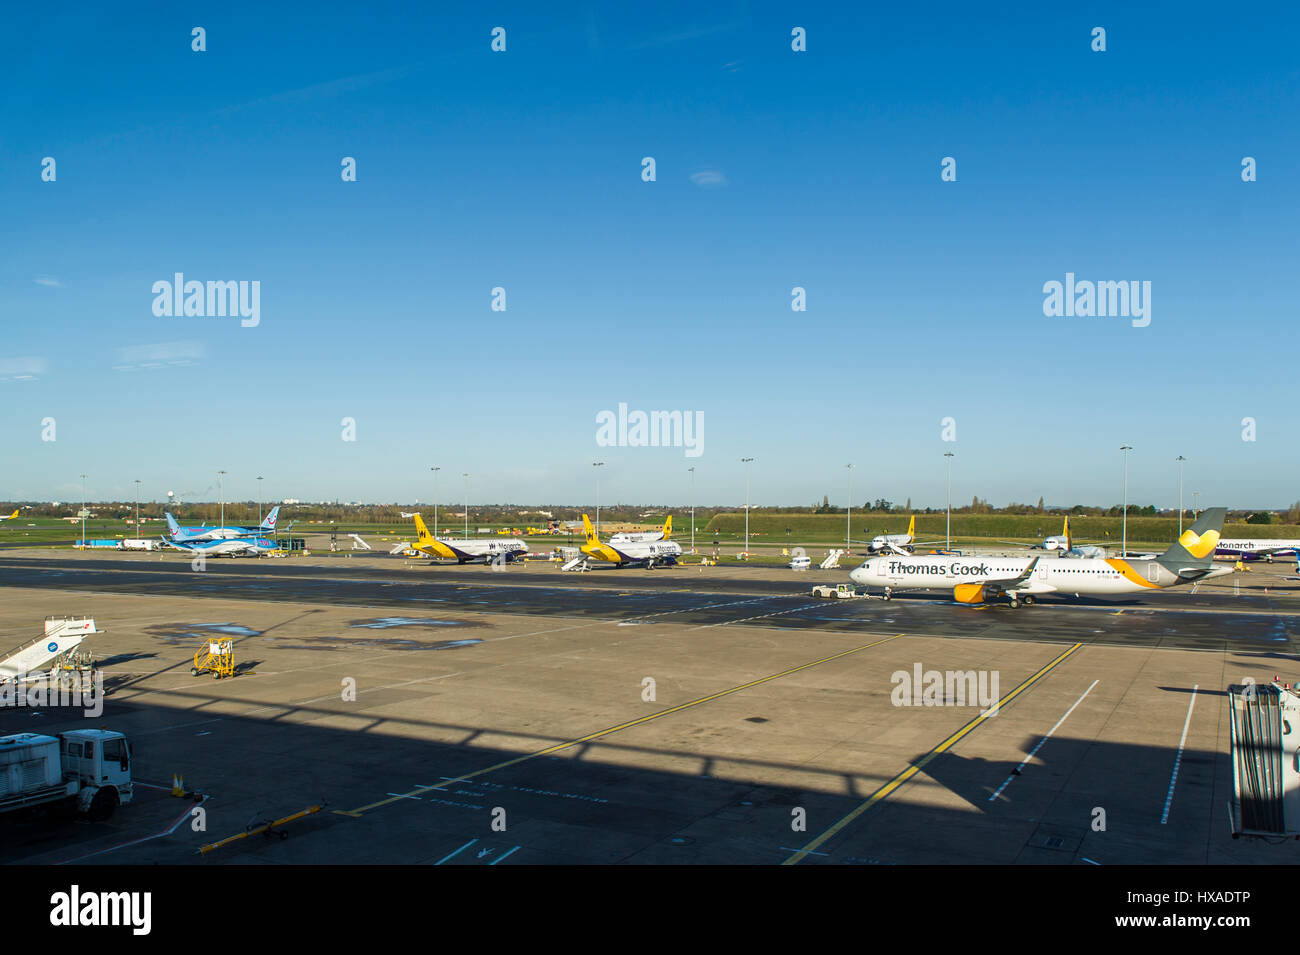 La Monarch aeromobili allineata all'Aeroporto di Birmingham, UK. La compagnia aerea ha andato in amministrazione che è la più grande compagnia aerea del Regno Unito guasto. Foto Stock